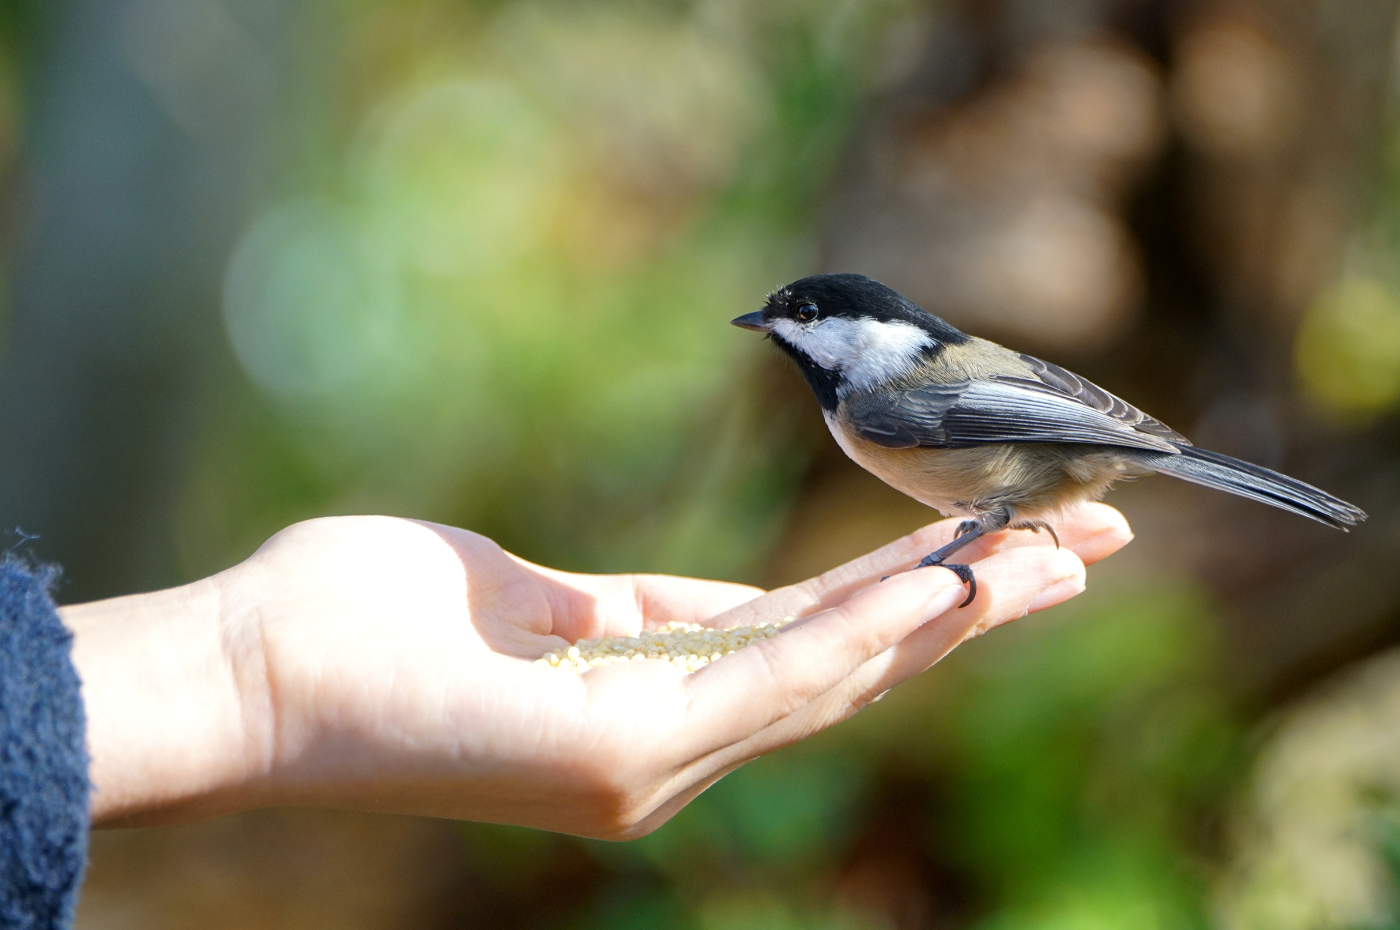 Comment attirer les oiseaux dans votre jardin cet été?